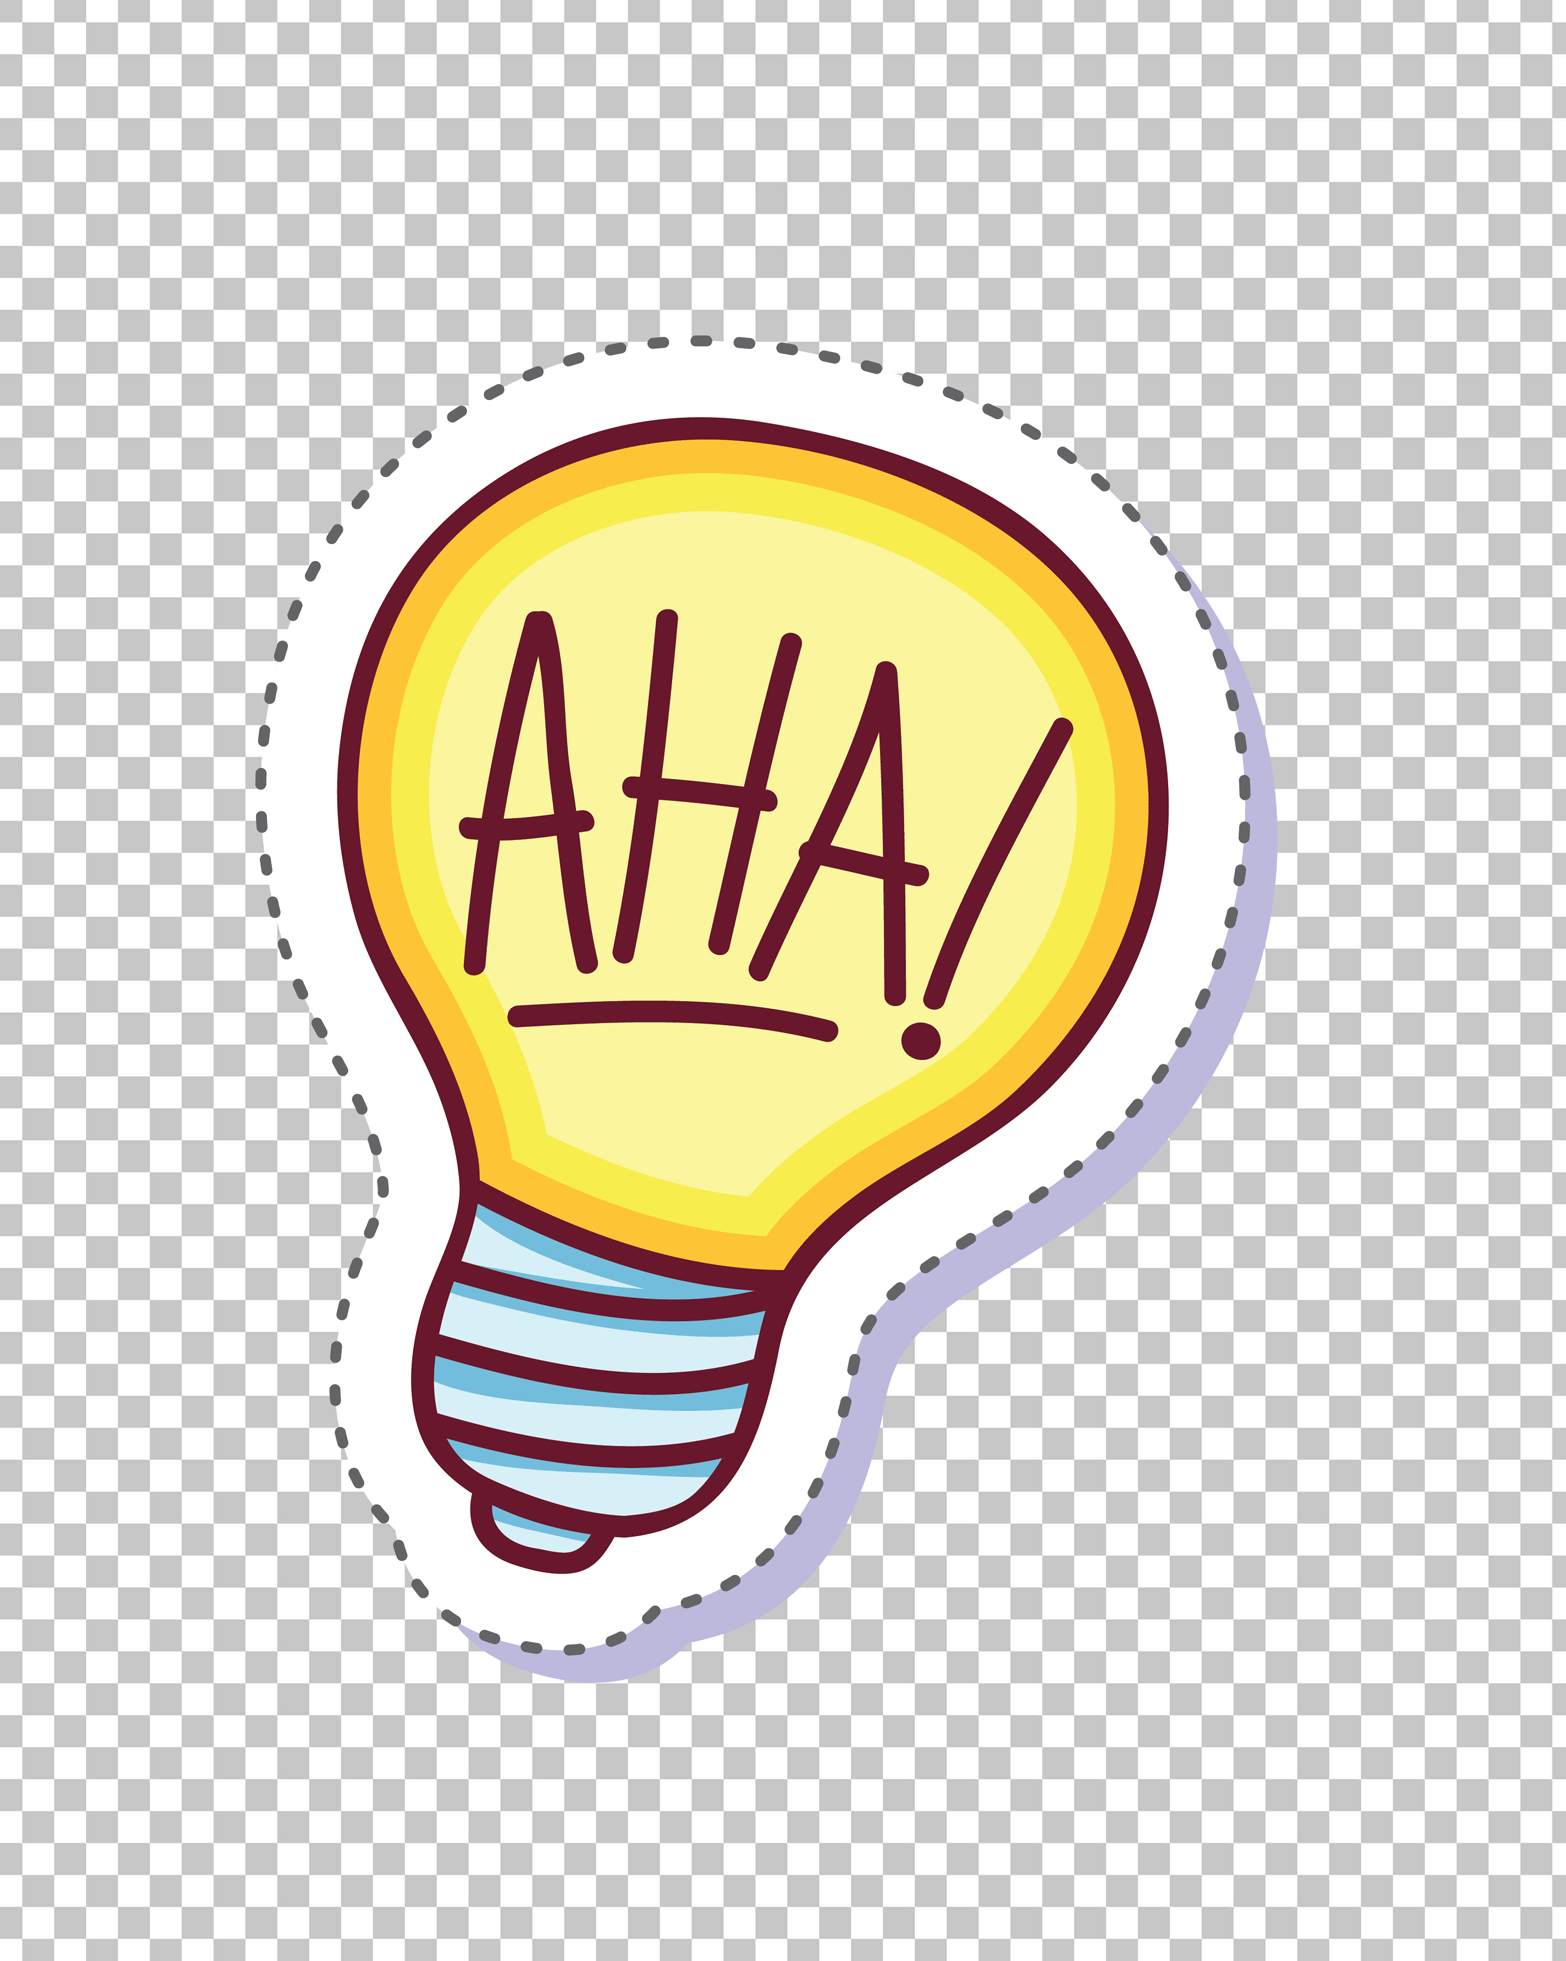 Aha! Light Bulb Sticker PNG Image